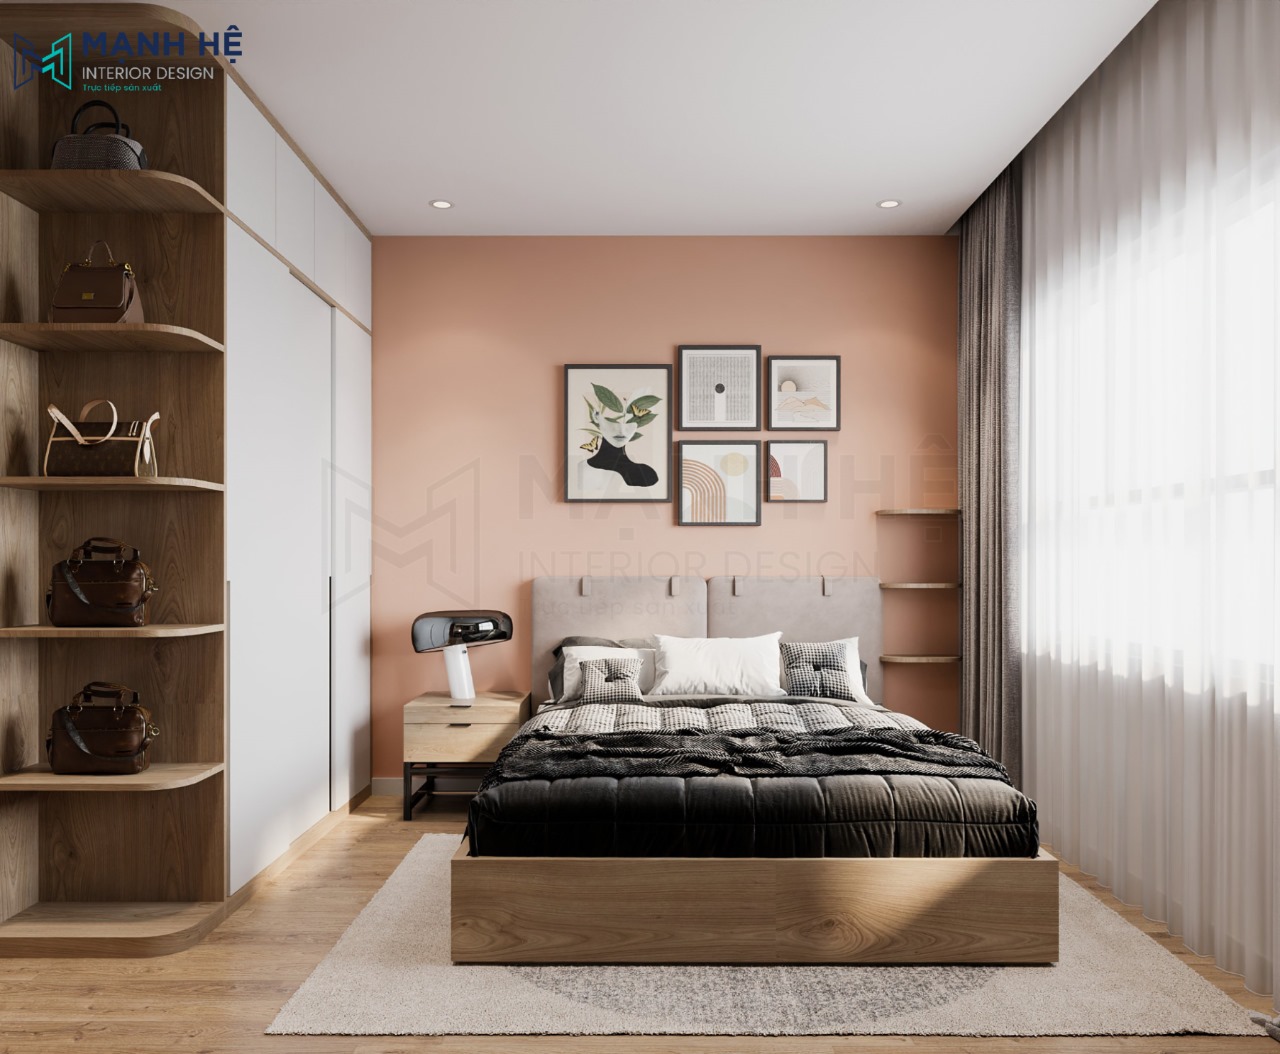 Thiết kế mẫu giường ngủ đơn giản mà đẹp với tông màu ấm áp